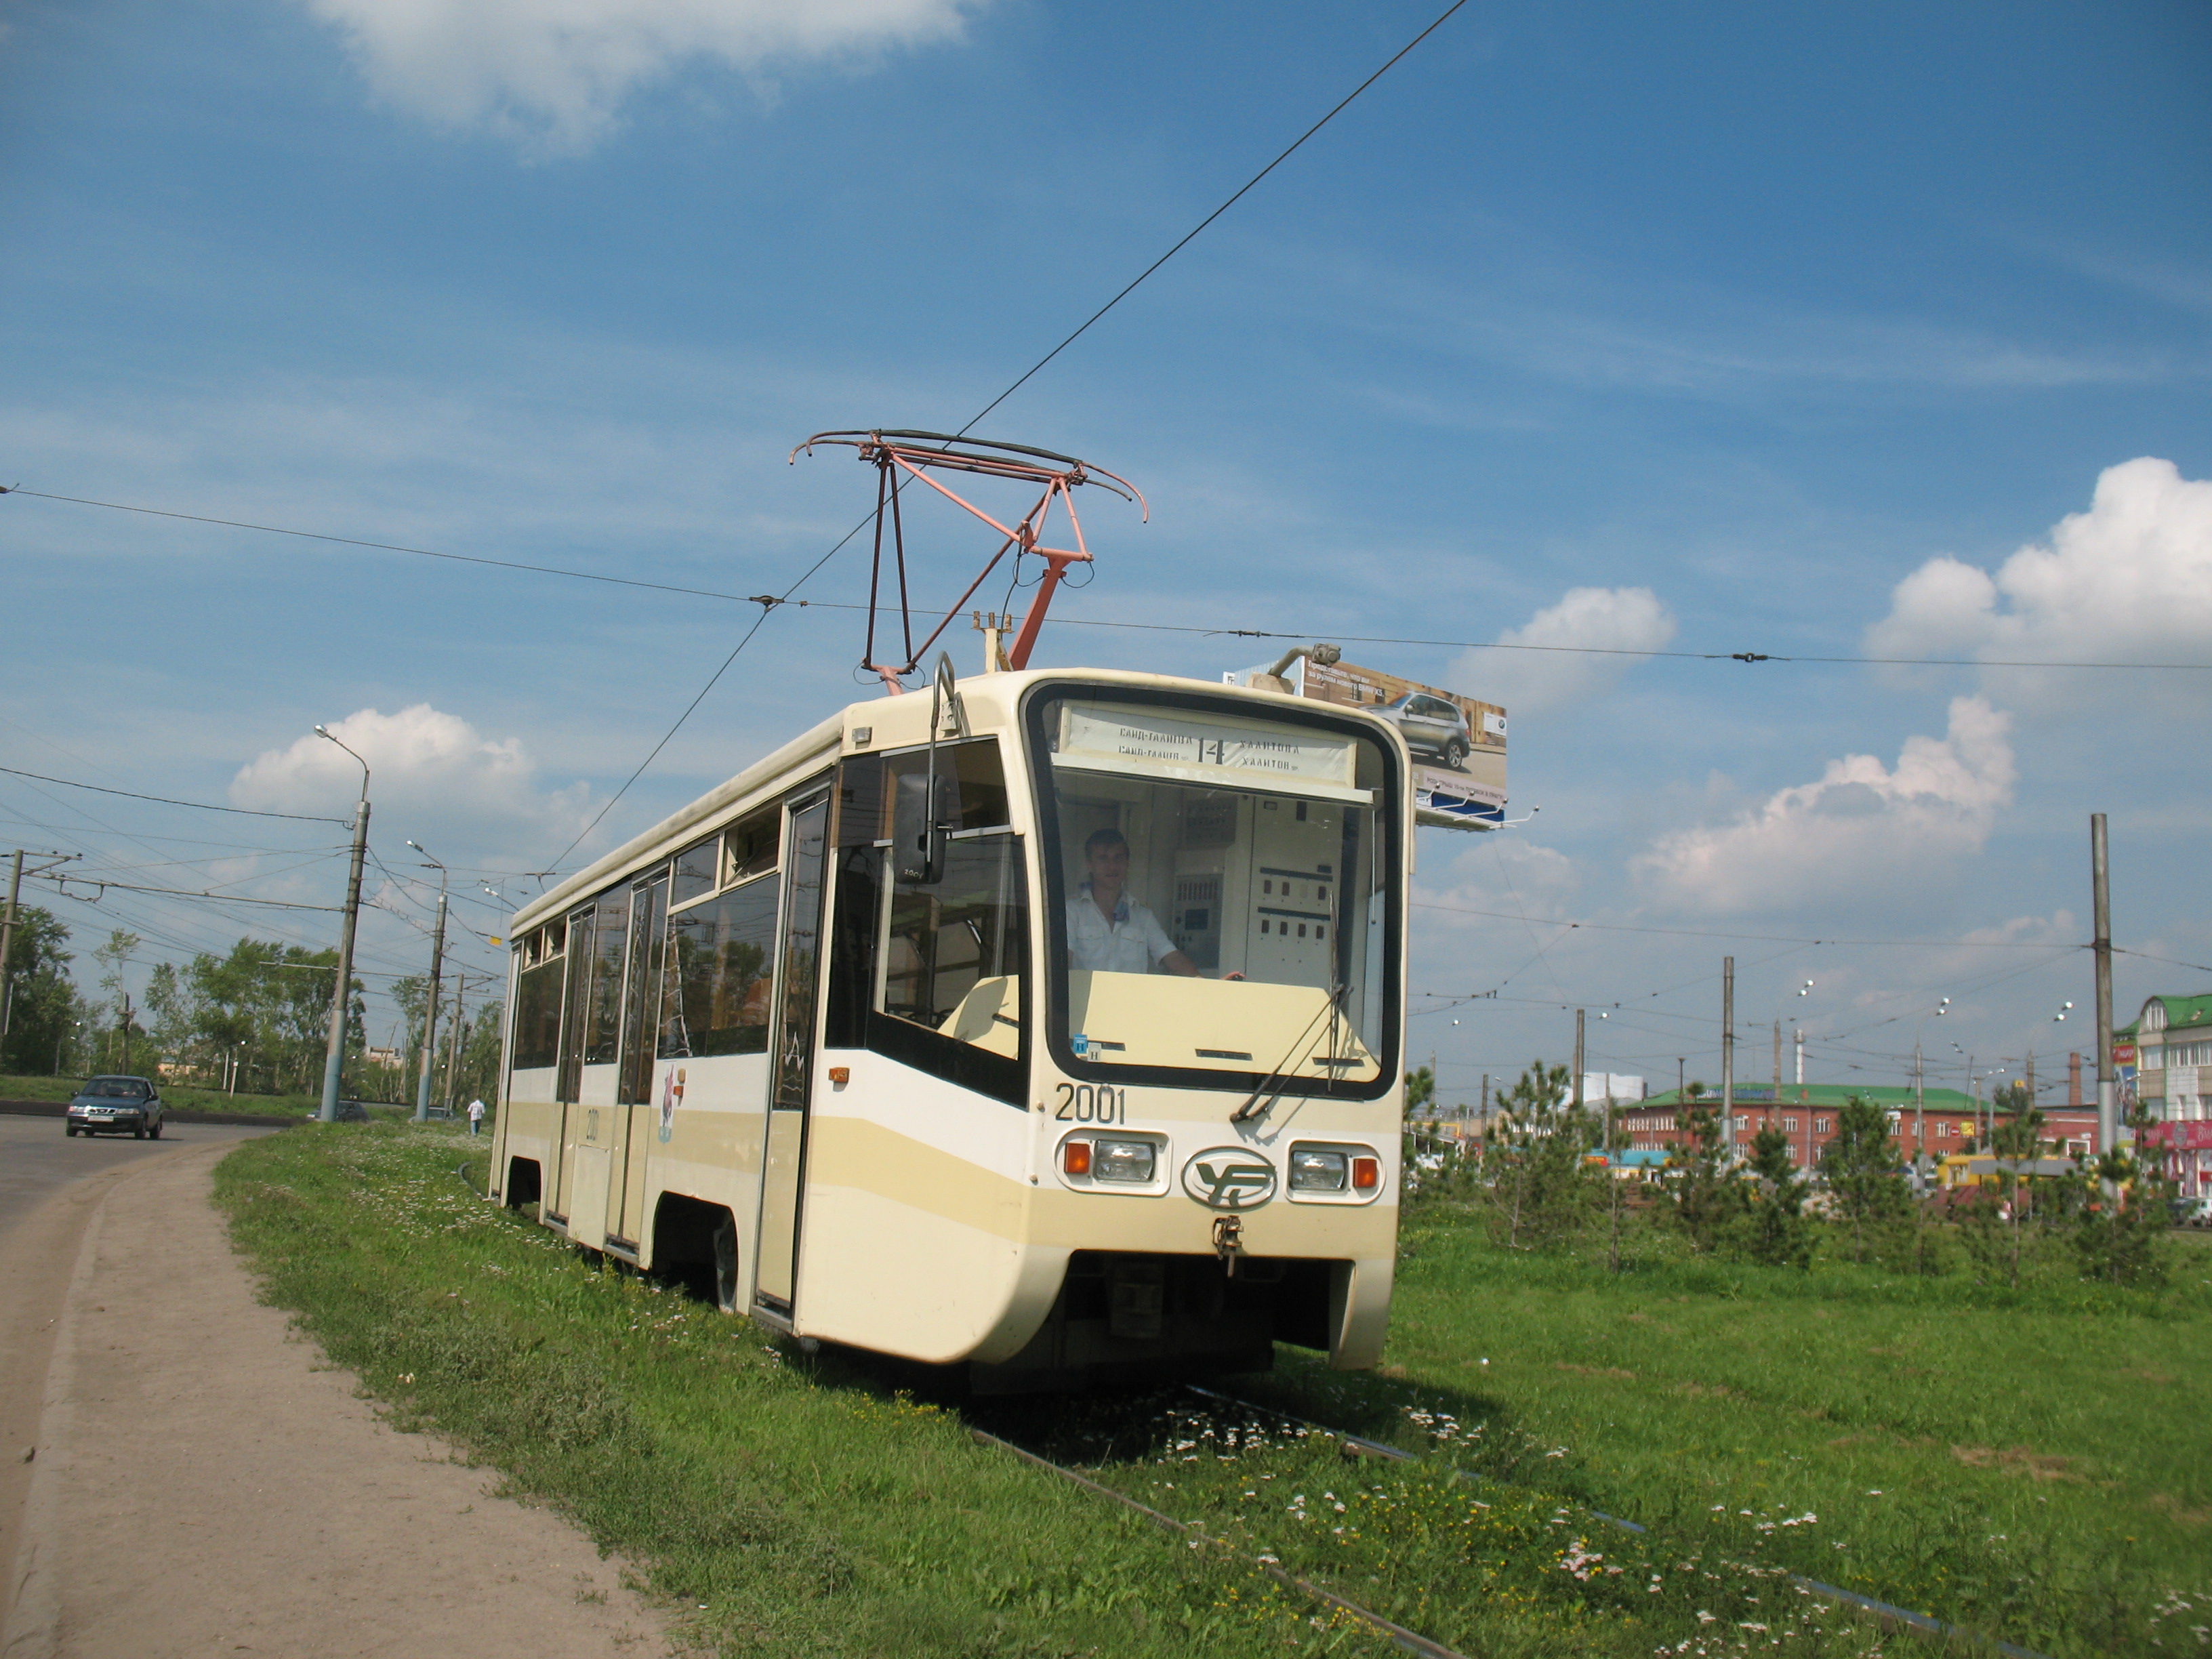 Трамвай 71-619K 1405, маршрут 19